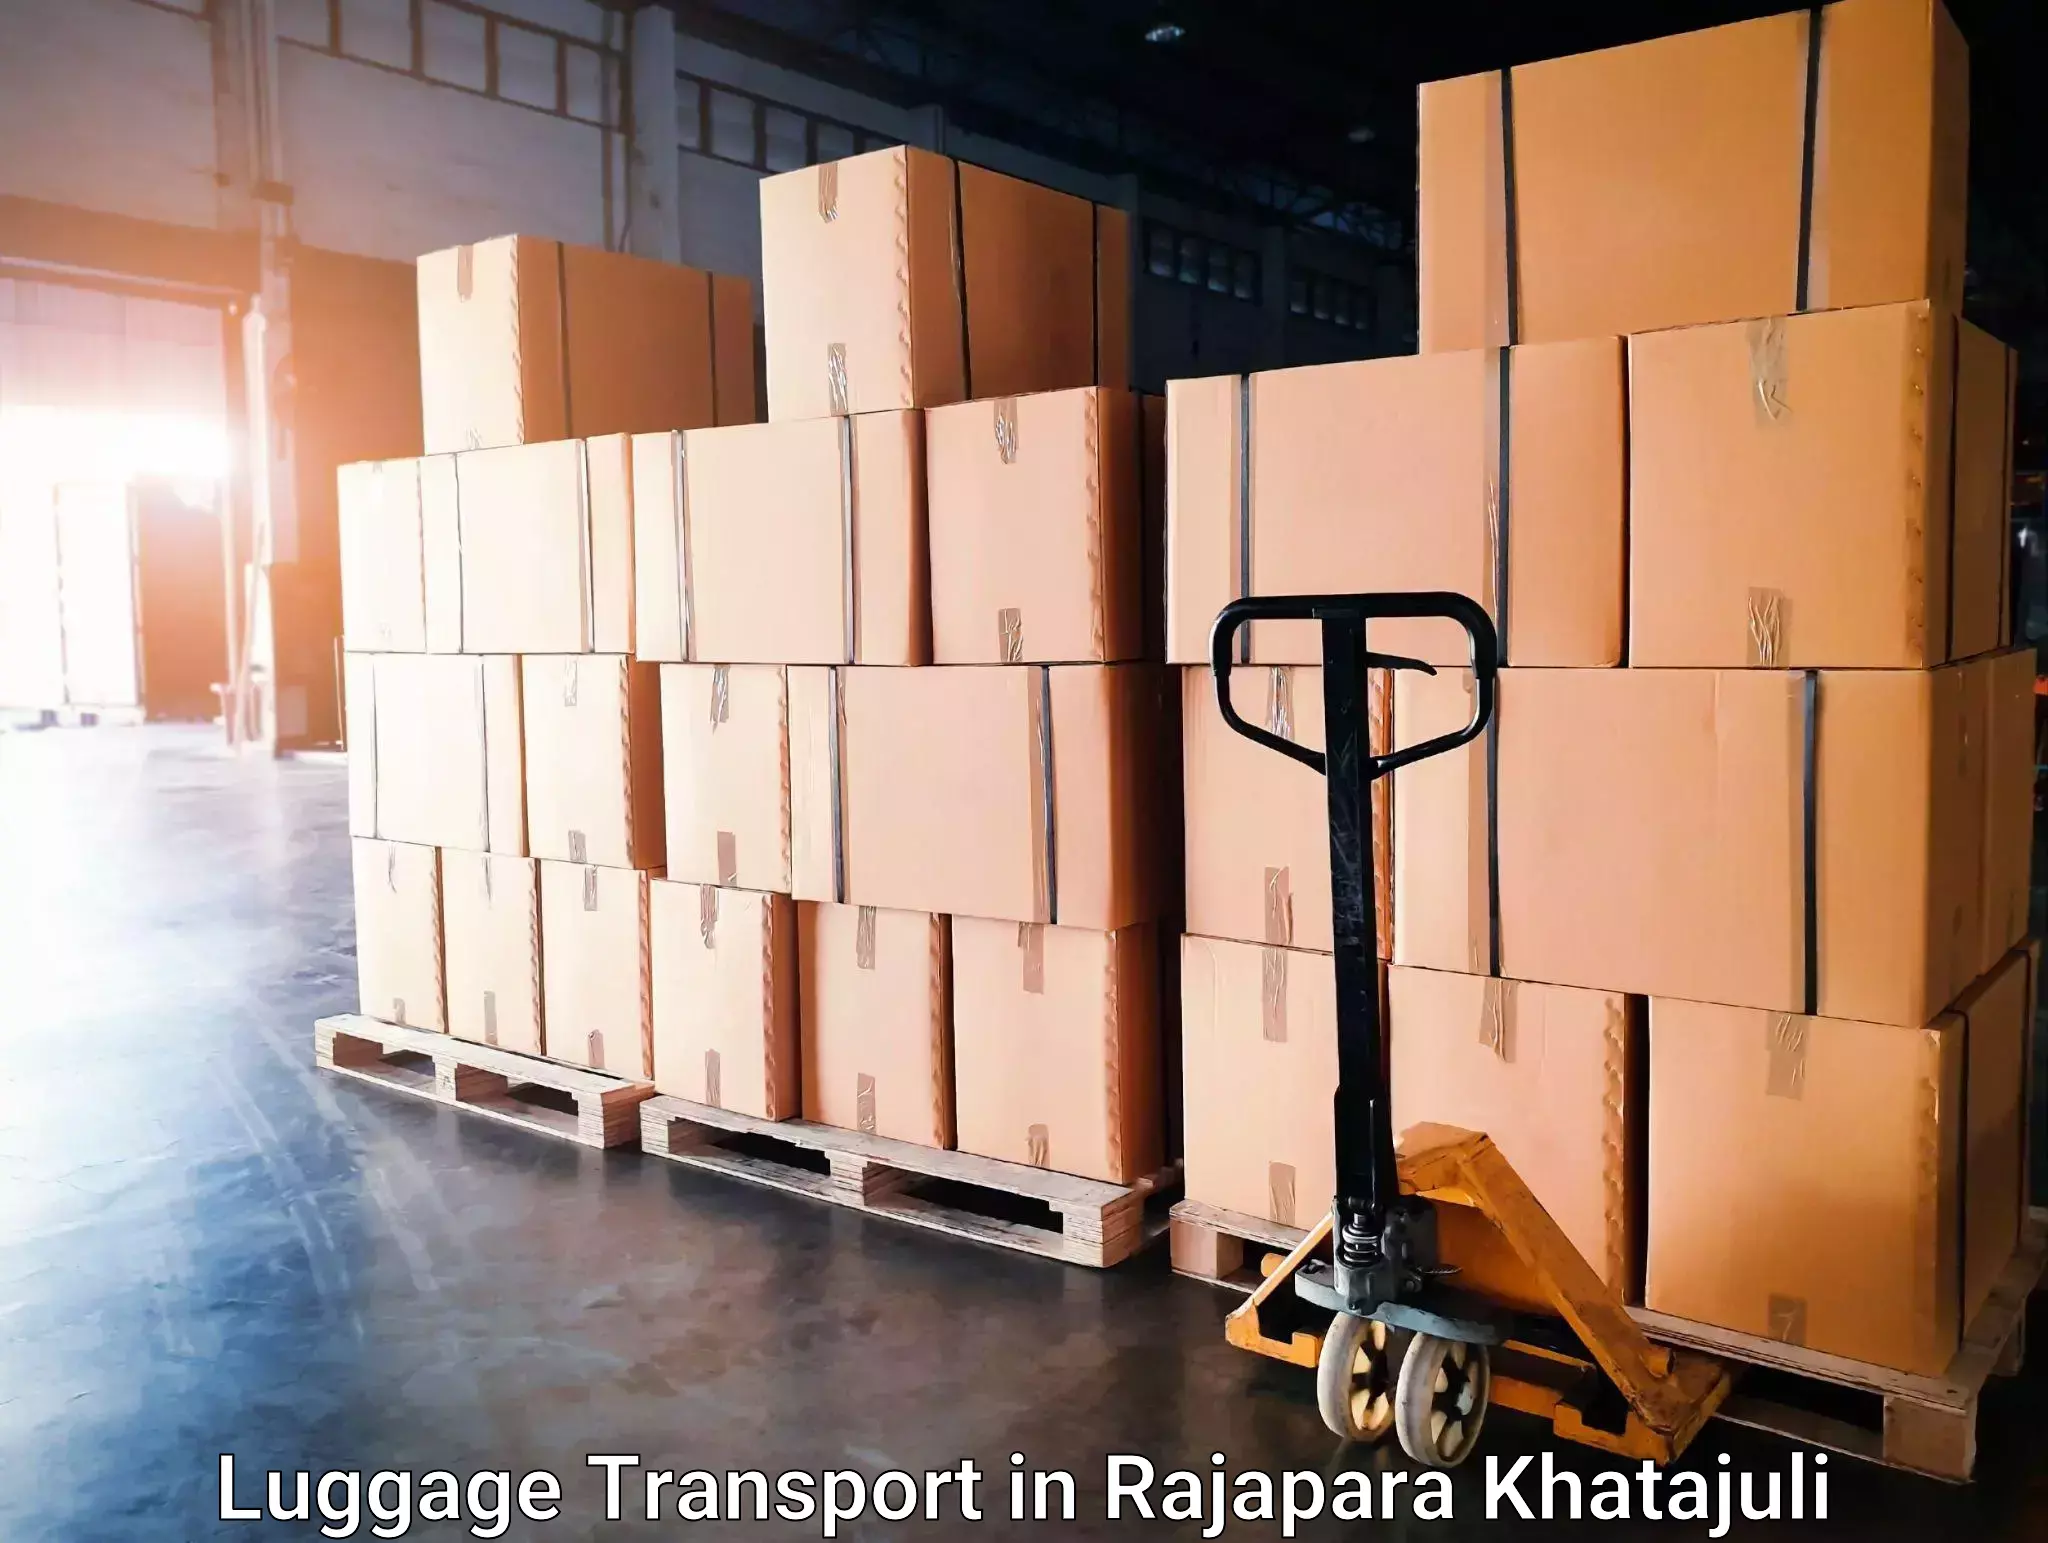 Efficient baggage transport in Rajapara Khatajuli